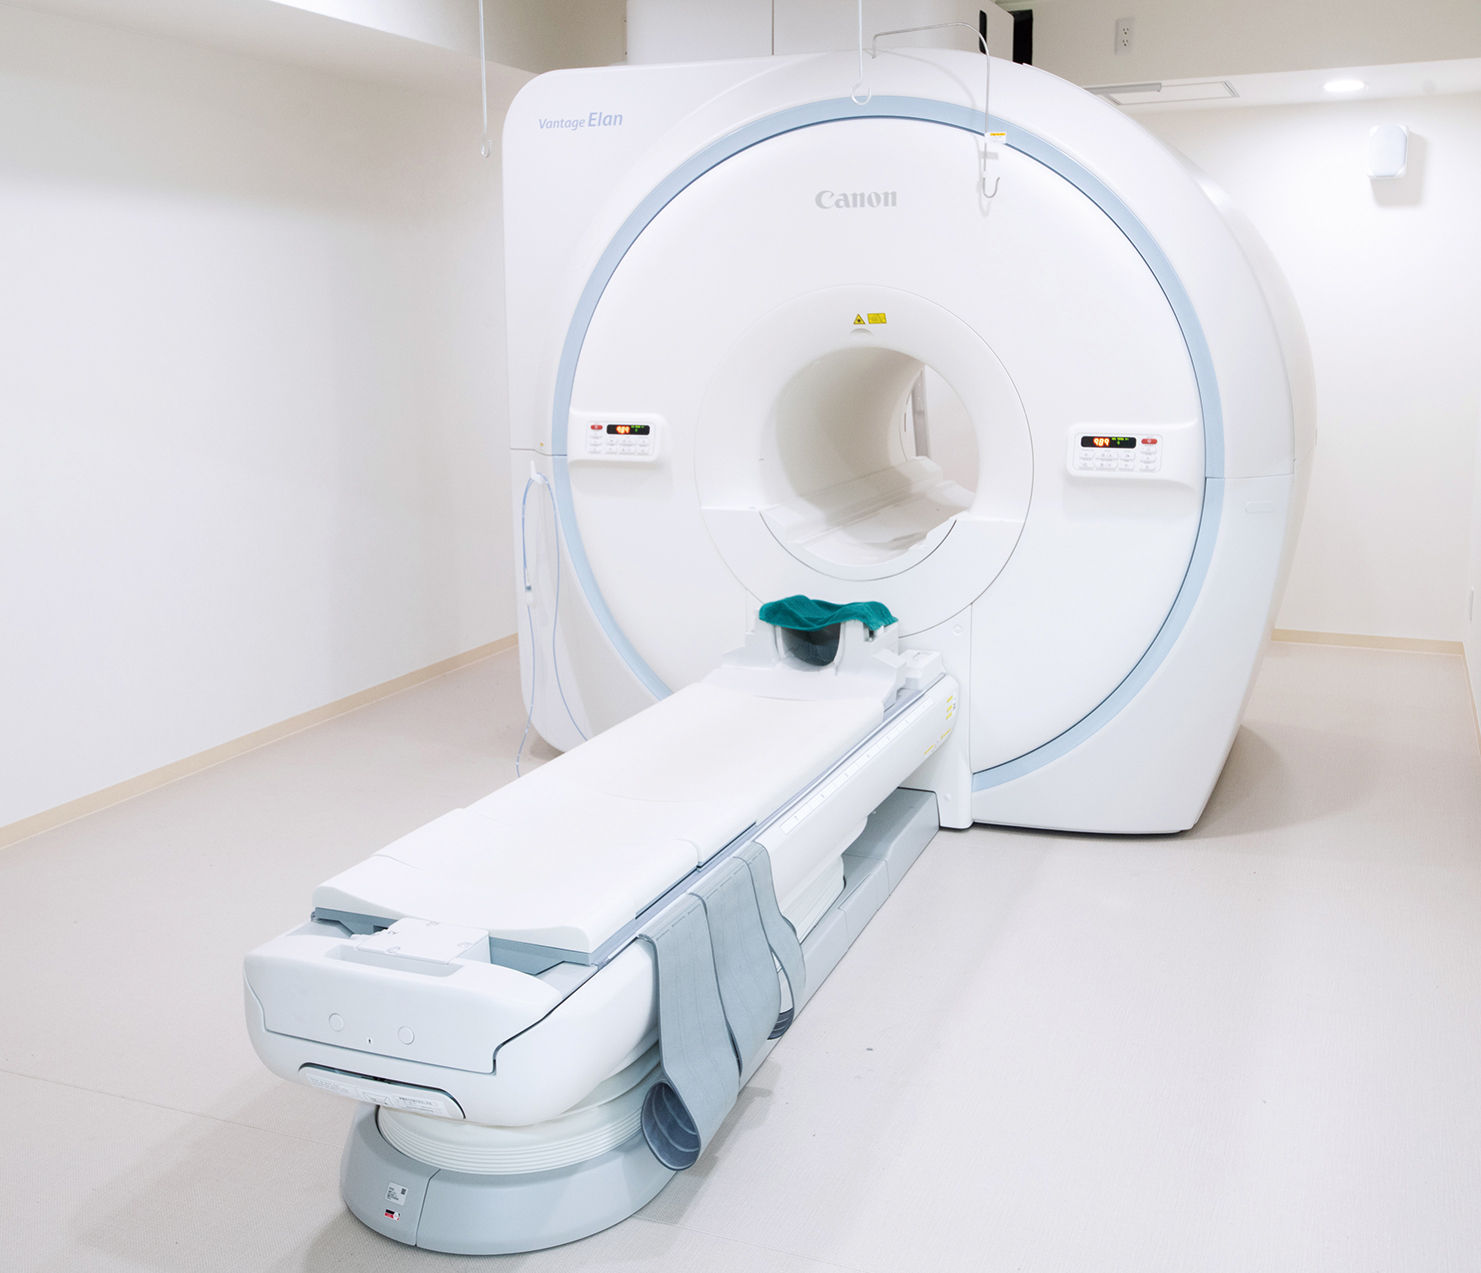 1.5テスラの高磁場MRIを導入。検査時の騒音を抑制し、検査空間を広げ、LED照明を用いて、狭く暗い場所が苦手という方にも配慮しています。 　「脳梗塞・脳腫瘍・脳動脈瘤といった脳疾患の早期発見に役立つ『脳ドック』（自由診療・2万4200円程度）を実施しています。オプション検査に、軽度認知障害（MCI）のリスクを調べるMCIスクリーニング検査も加わりました」と院長。